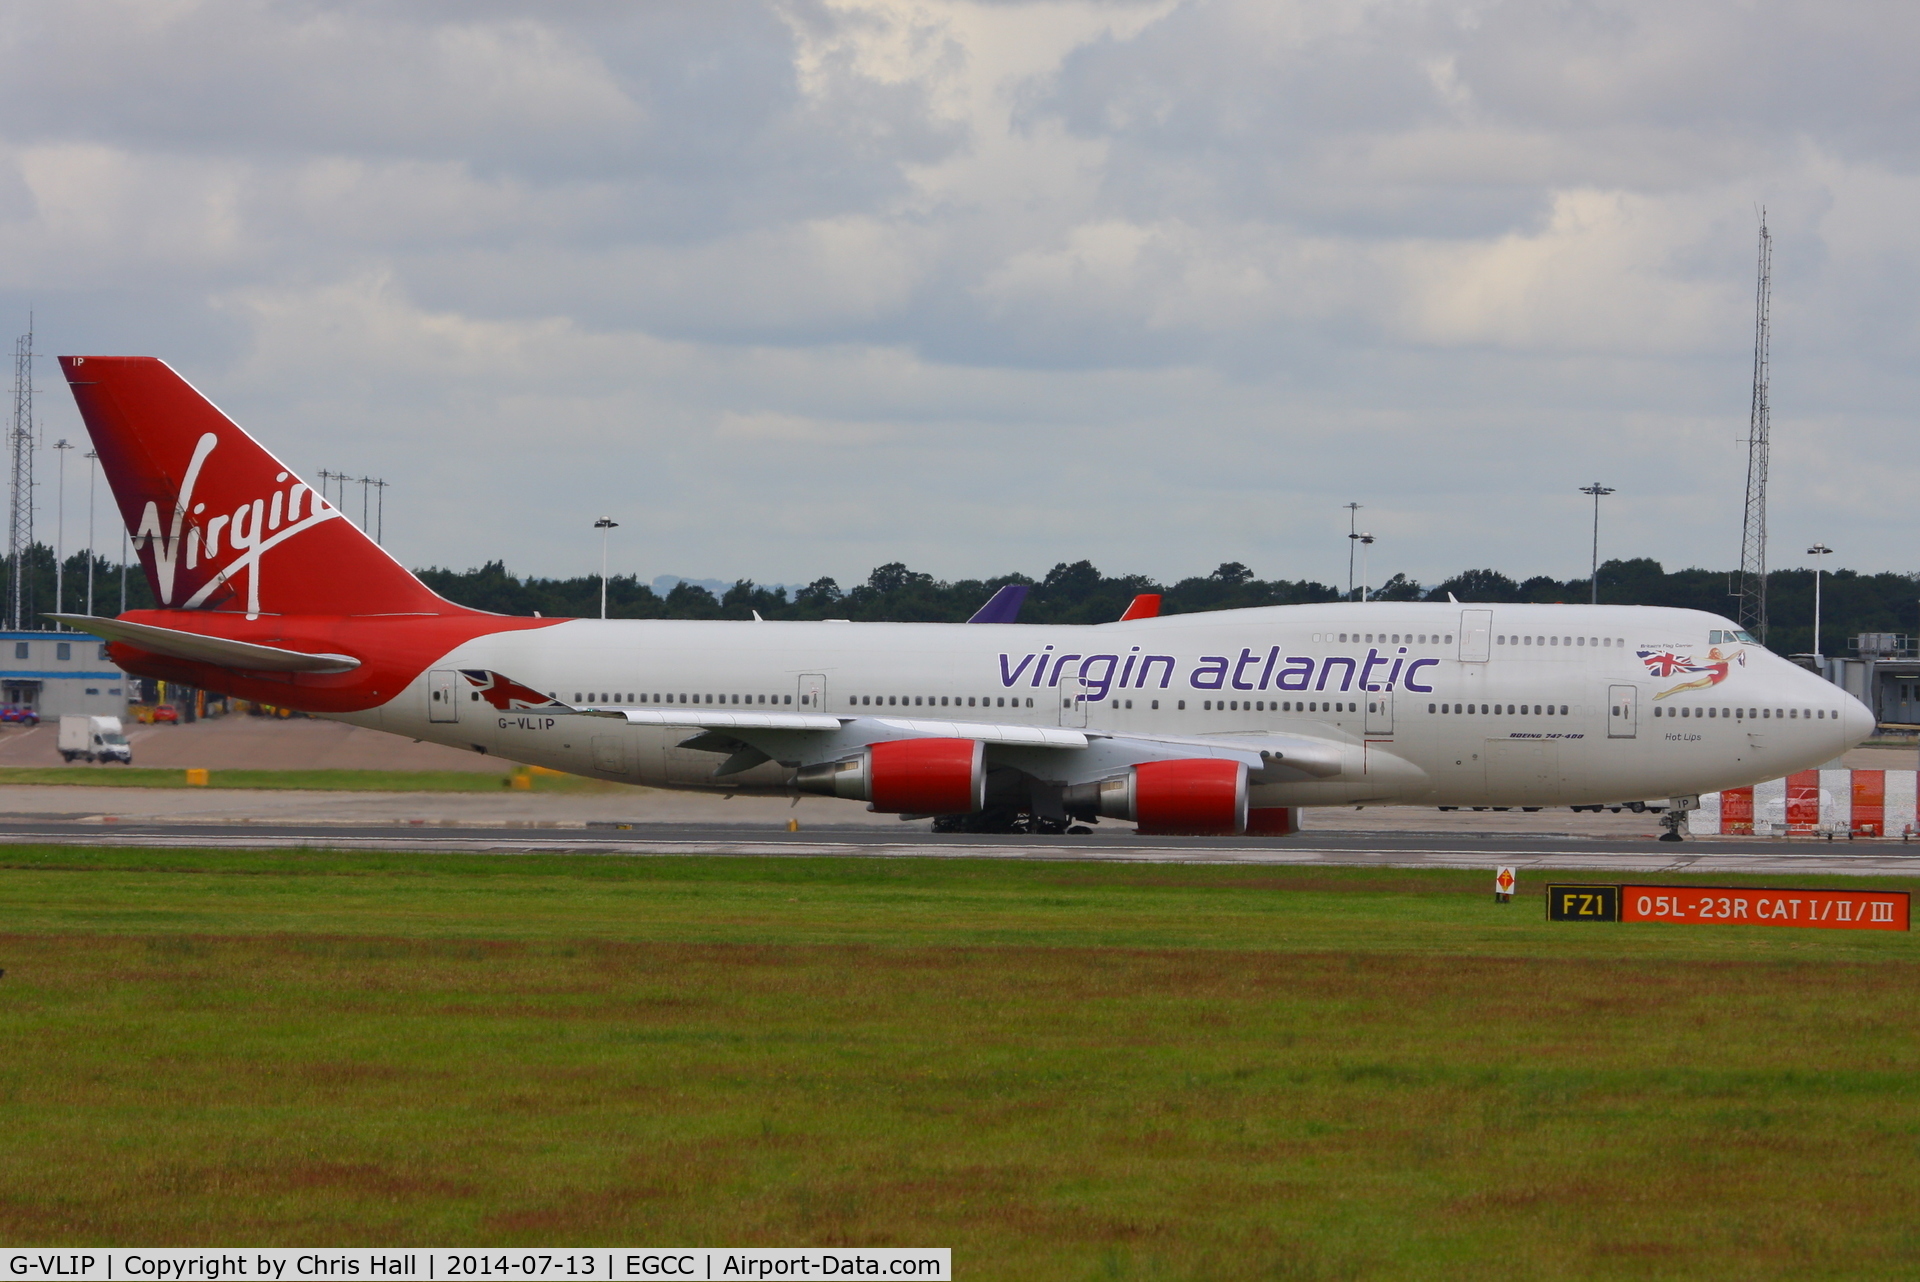 G-VLIP, 2001 Boeing 747-443 C/N 32338, Virgin Atlantic